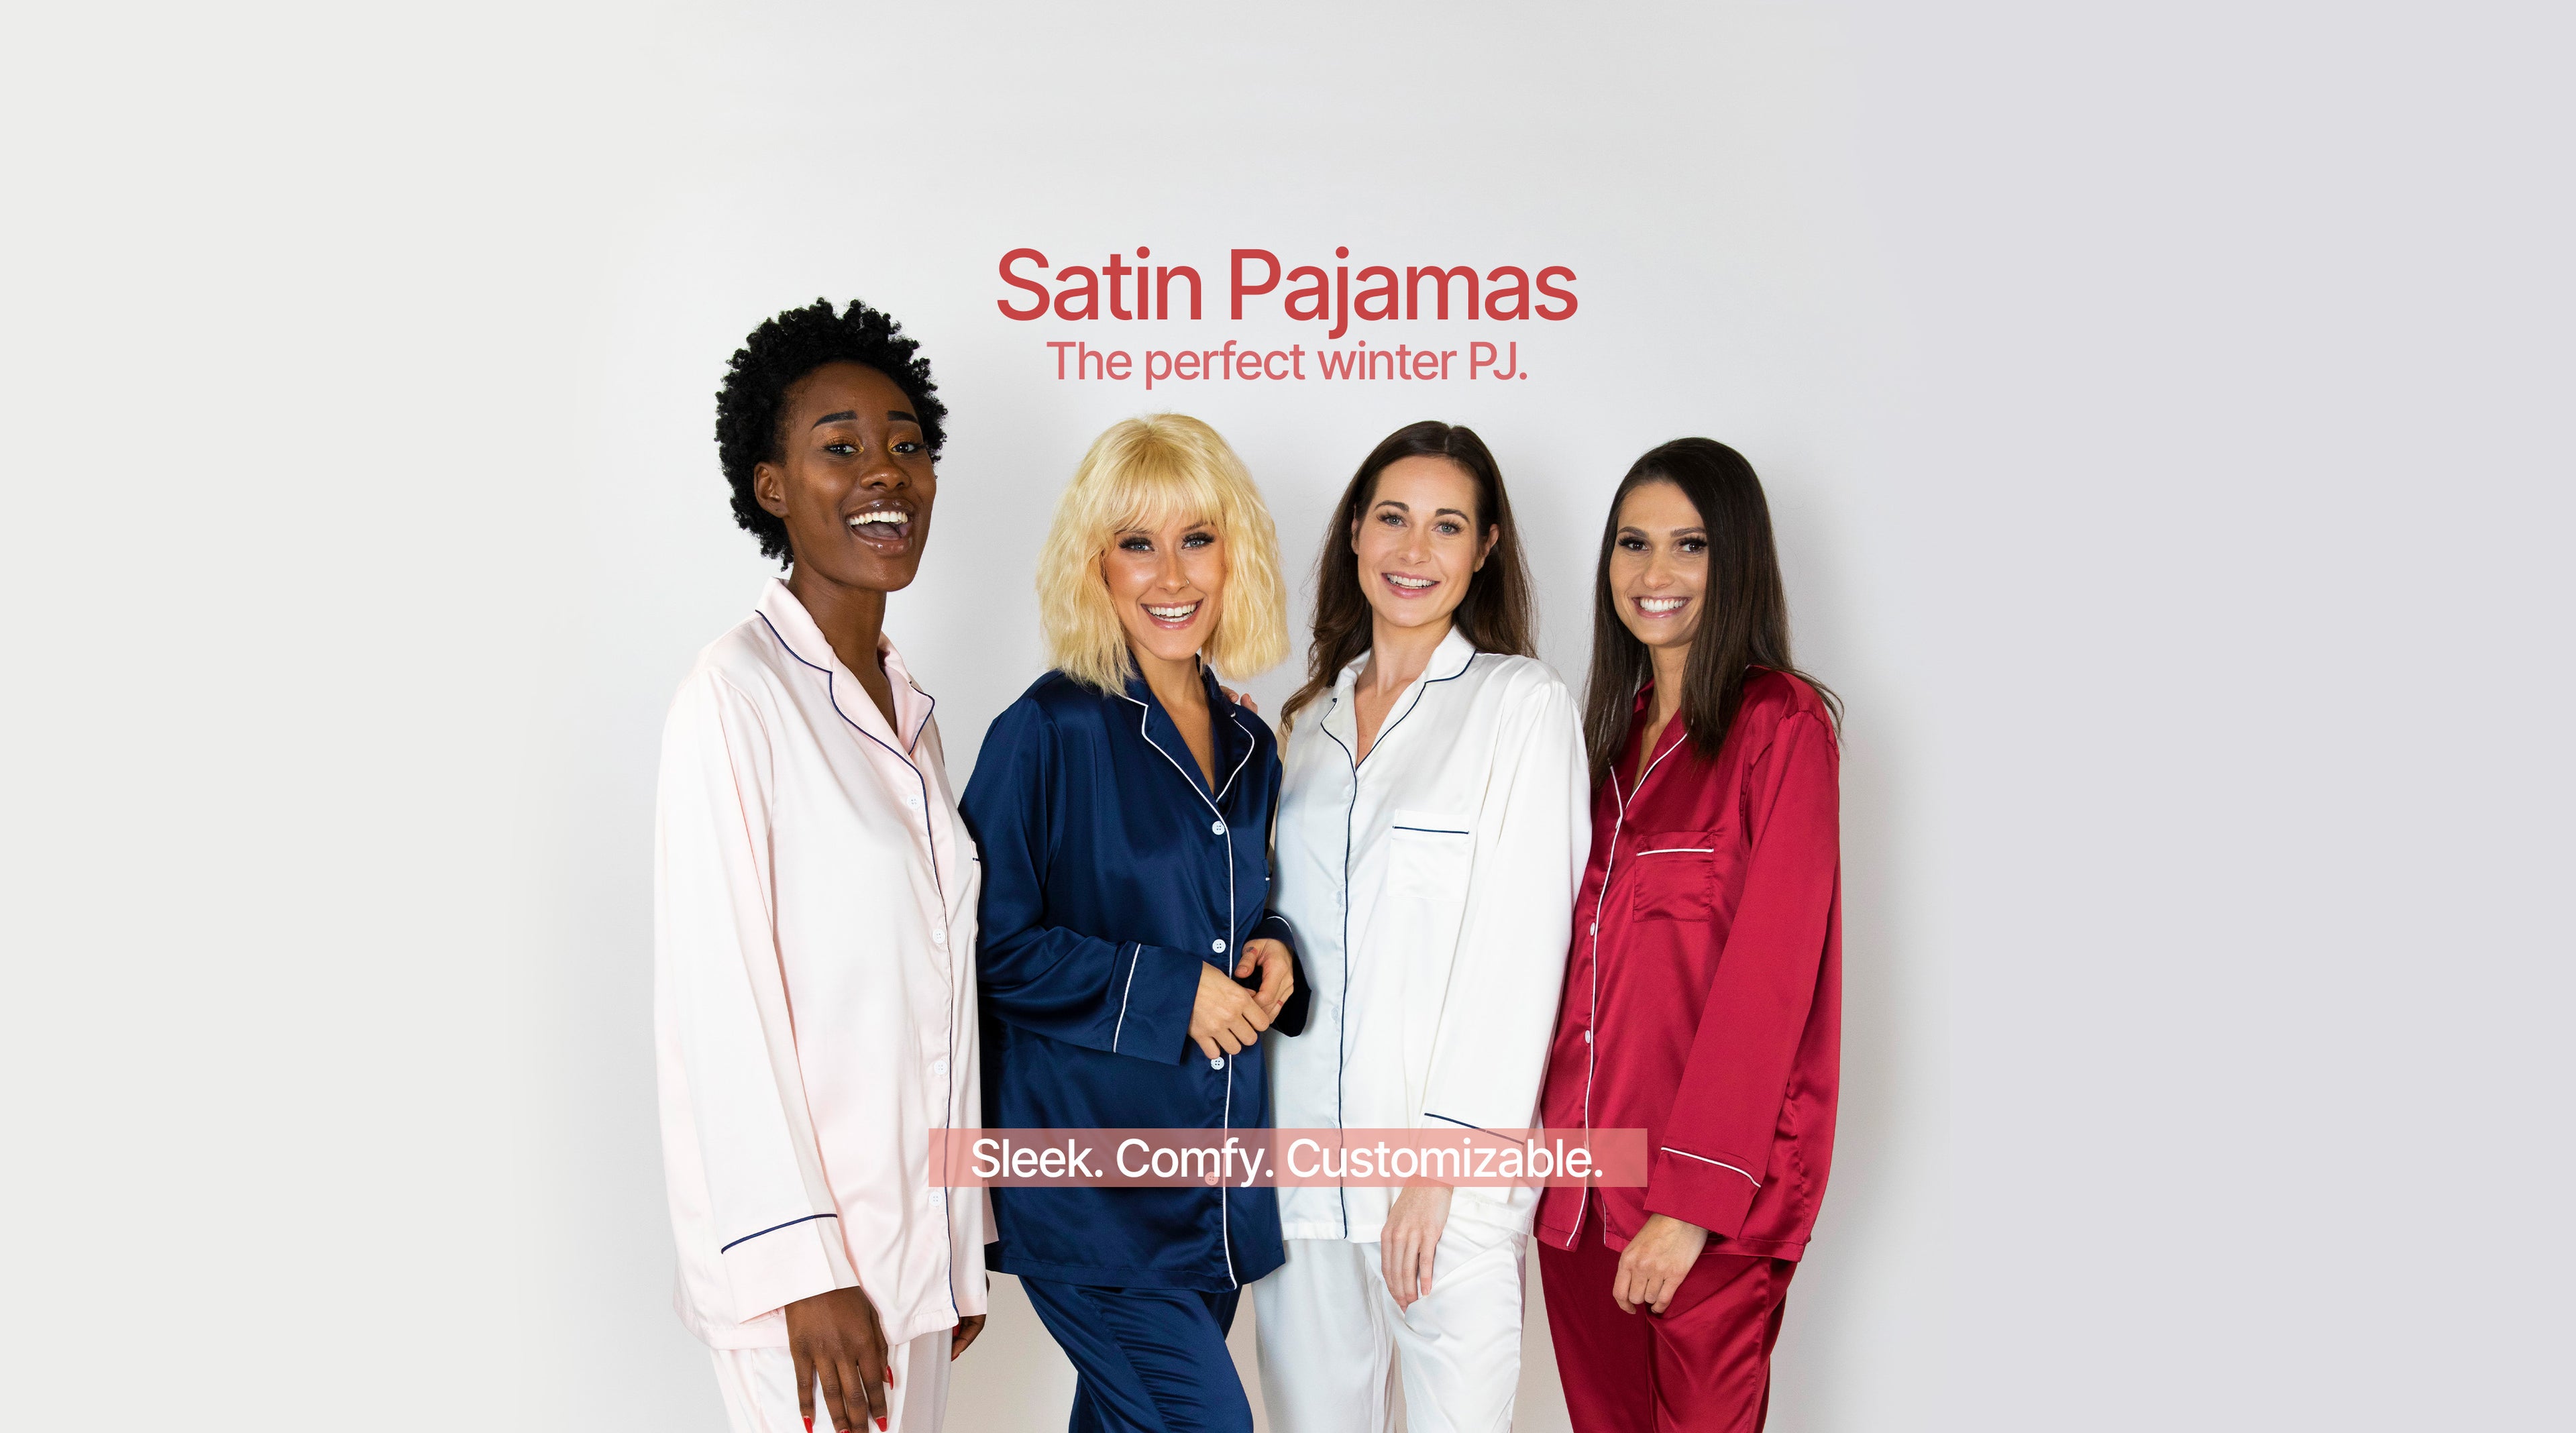 Sleek, Comfy, Customizable Satin Pajamas